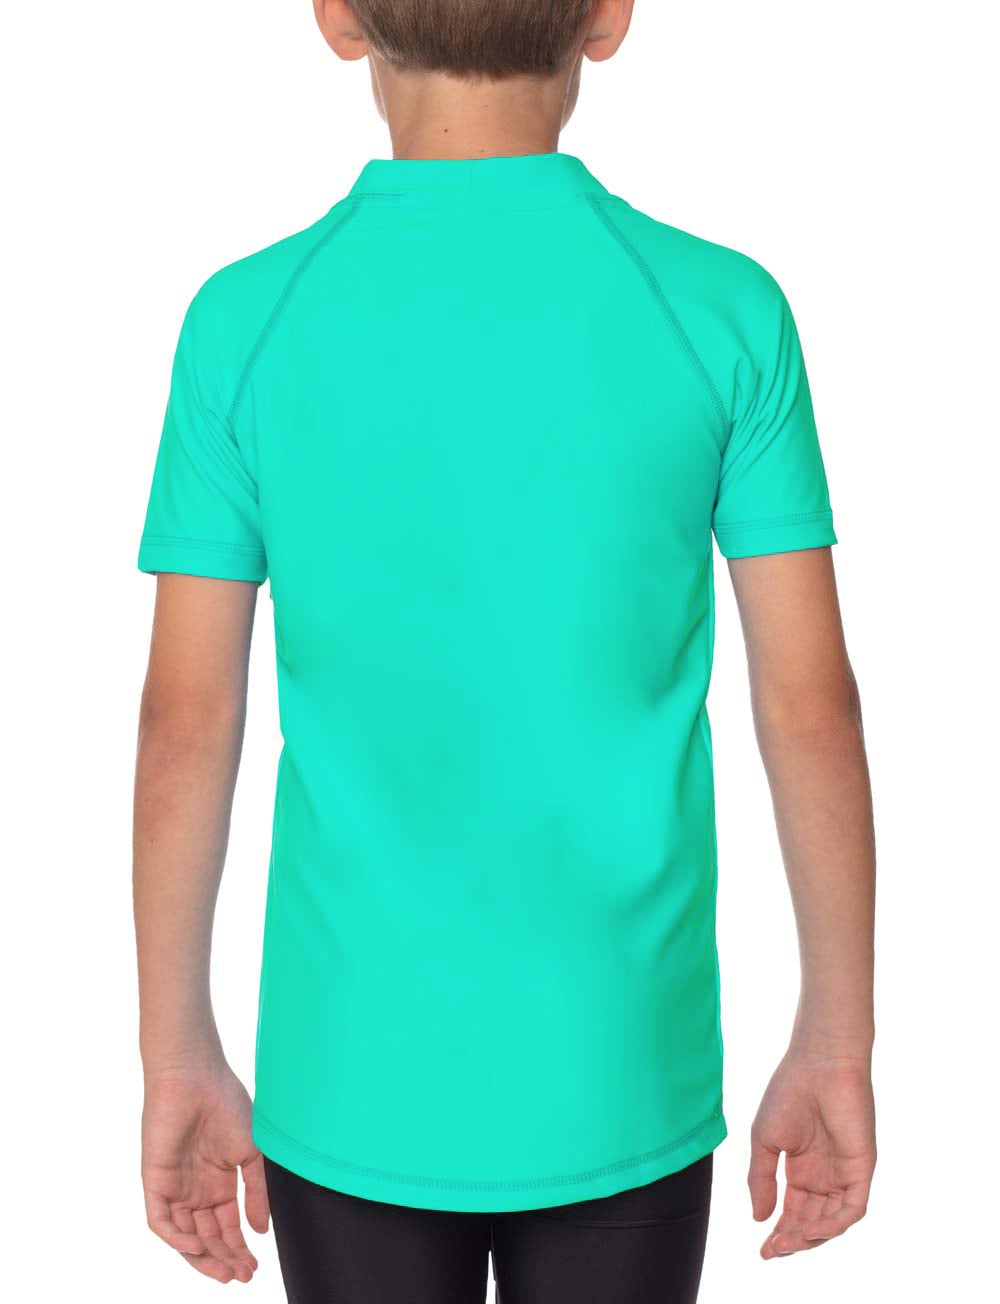 Kinder UV Shirt - Eva (kurzarm)